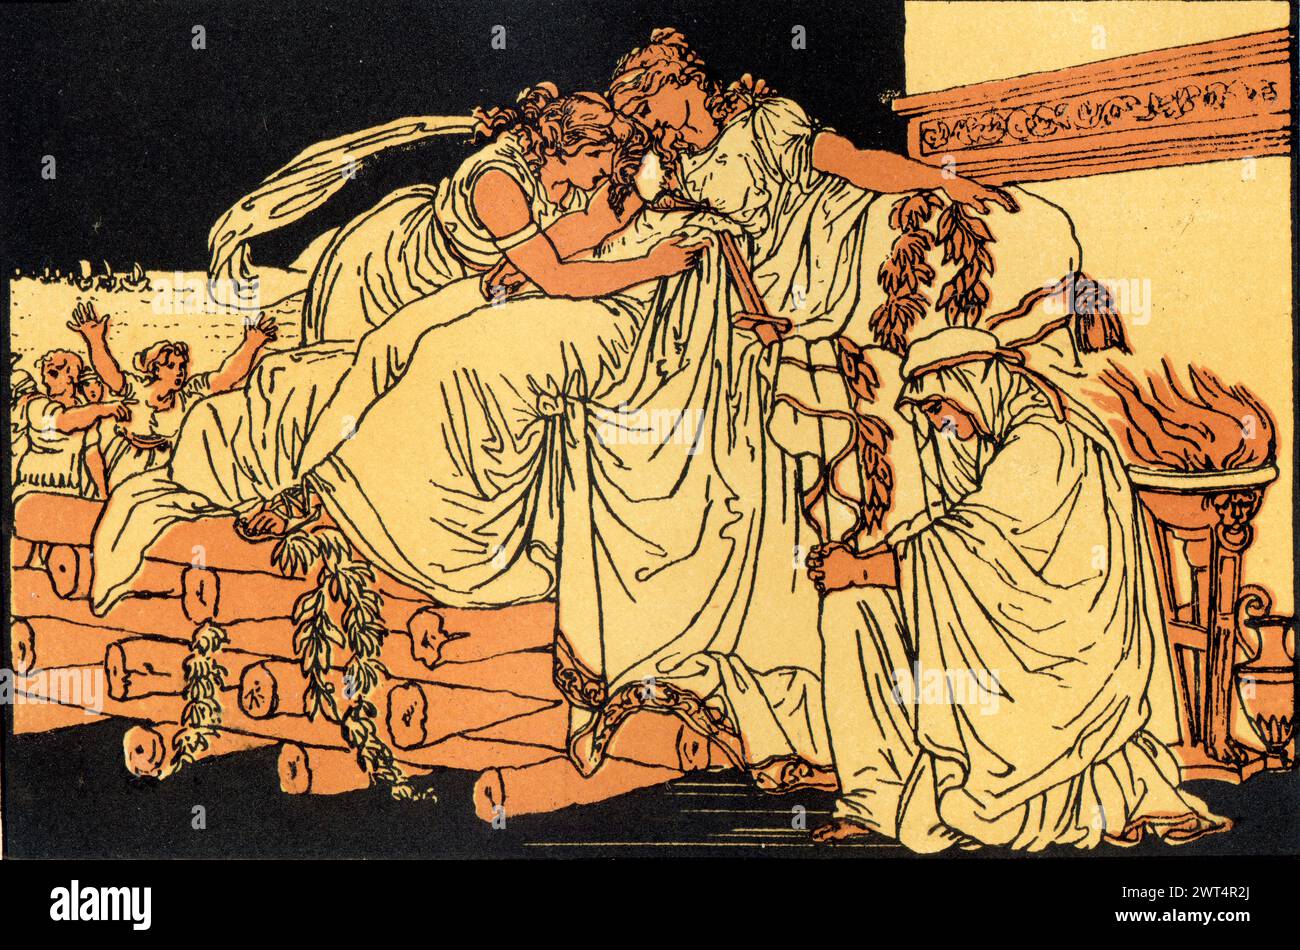 Illustrazione d'epoca mitologia romana, Dido sul Pirro funebre, Eneide un poema epico latino che racconta la leggendaria storia di Enea, un troiano fuggito Foto Stock